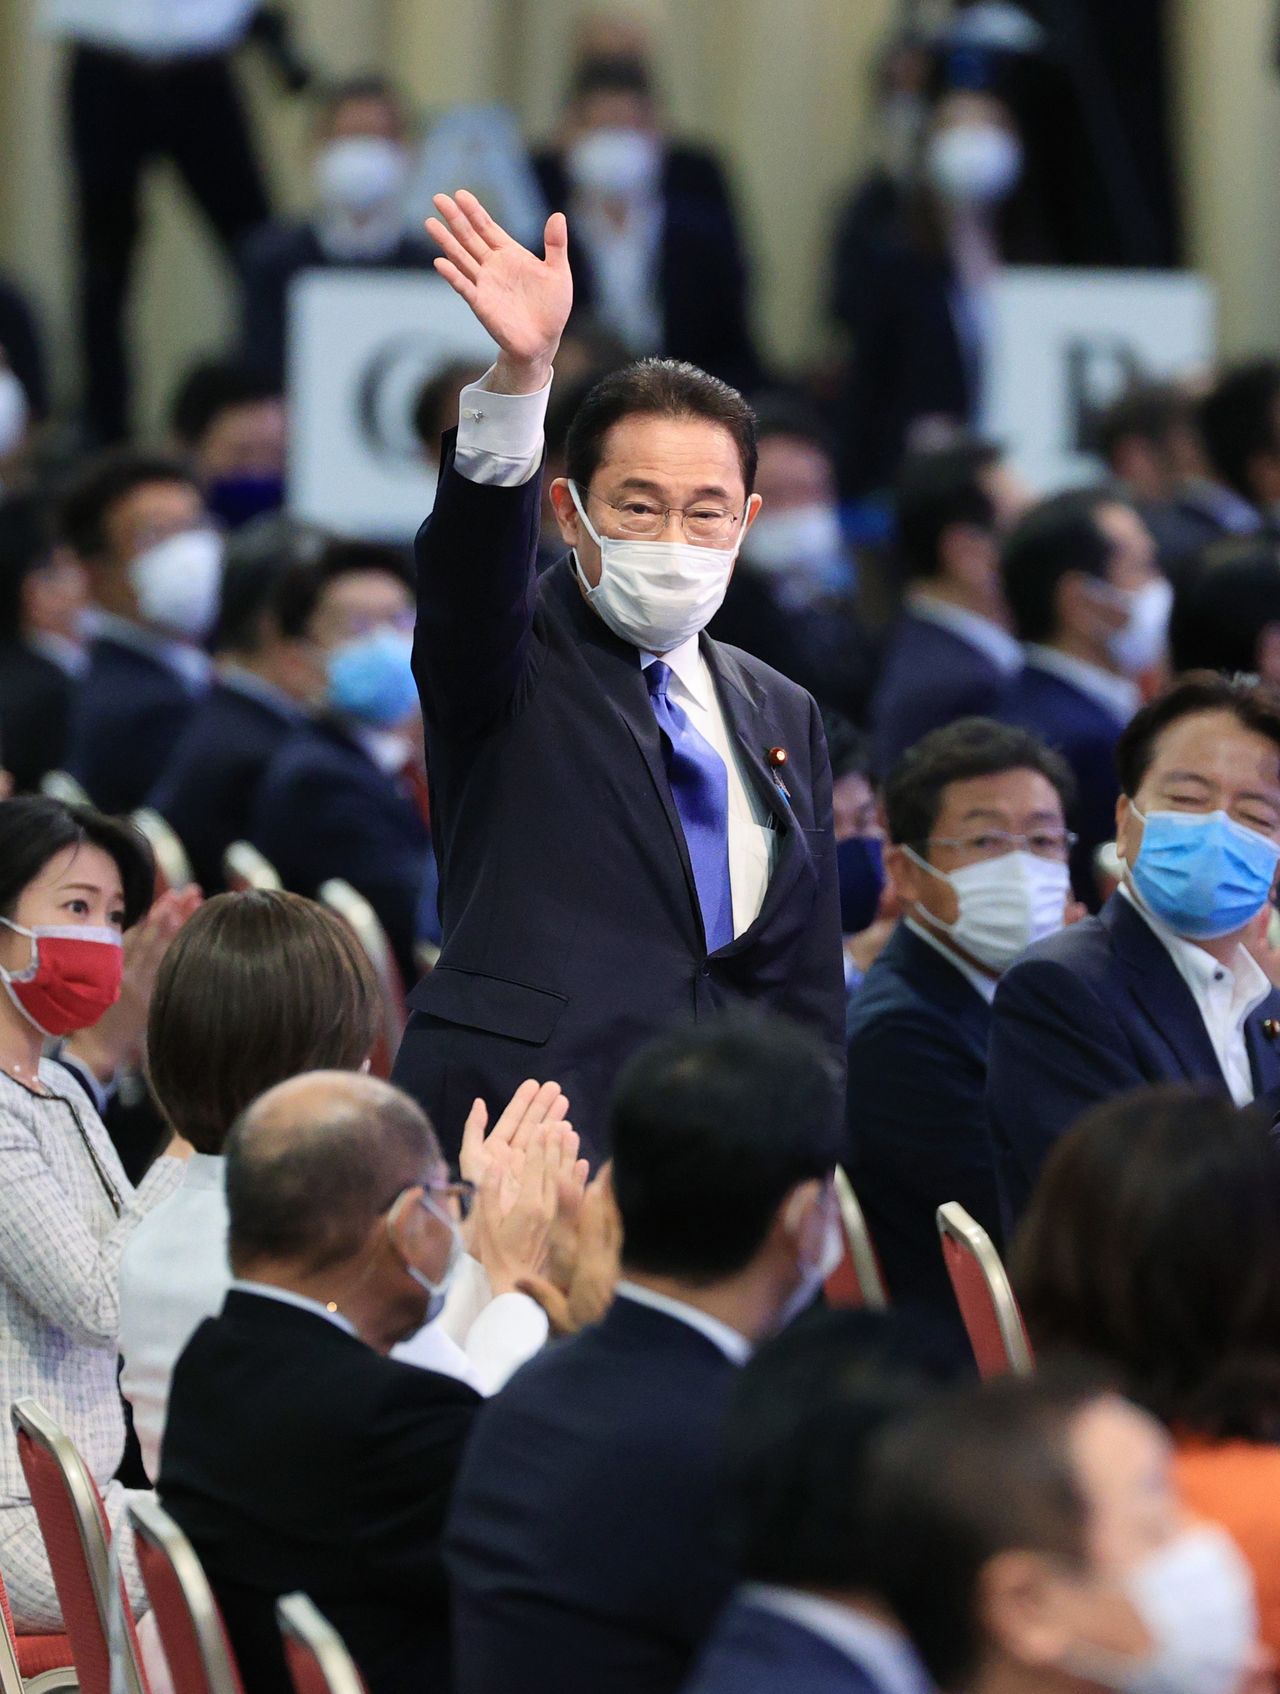 كيشيدا فوميئو يلوح بيده بعد فوزه في انتخابات قيادة الحزب الليبرالي الديمقراطي في طوكيو باليابان في التاسع والعشرين من سبتمبر/ أيلول 2021 (جيجي برس).